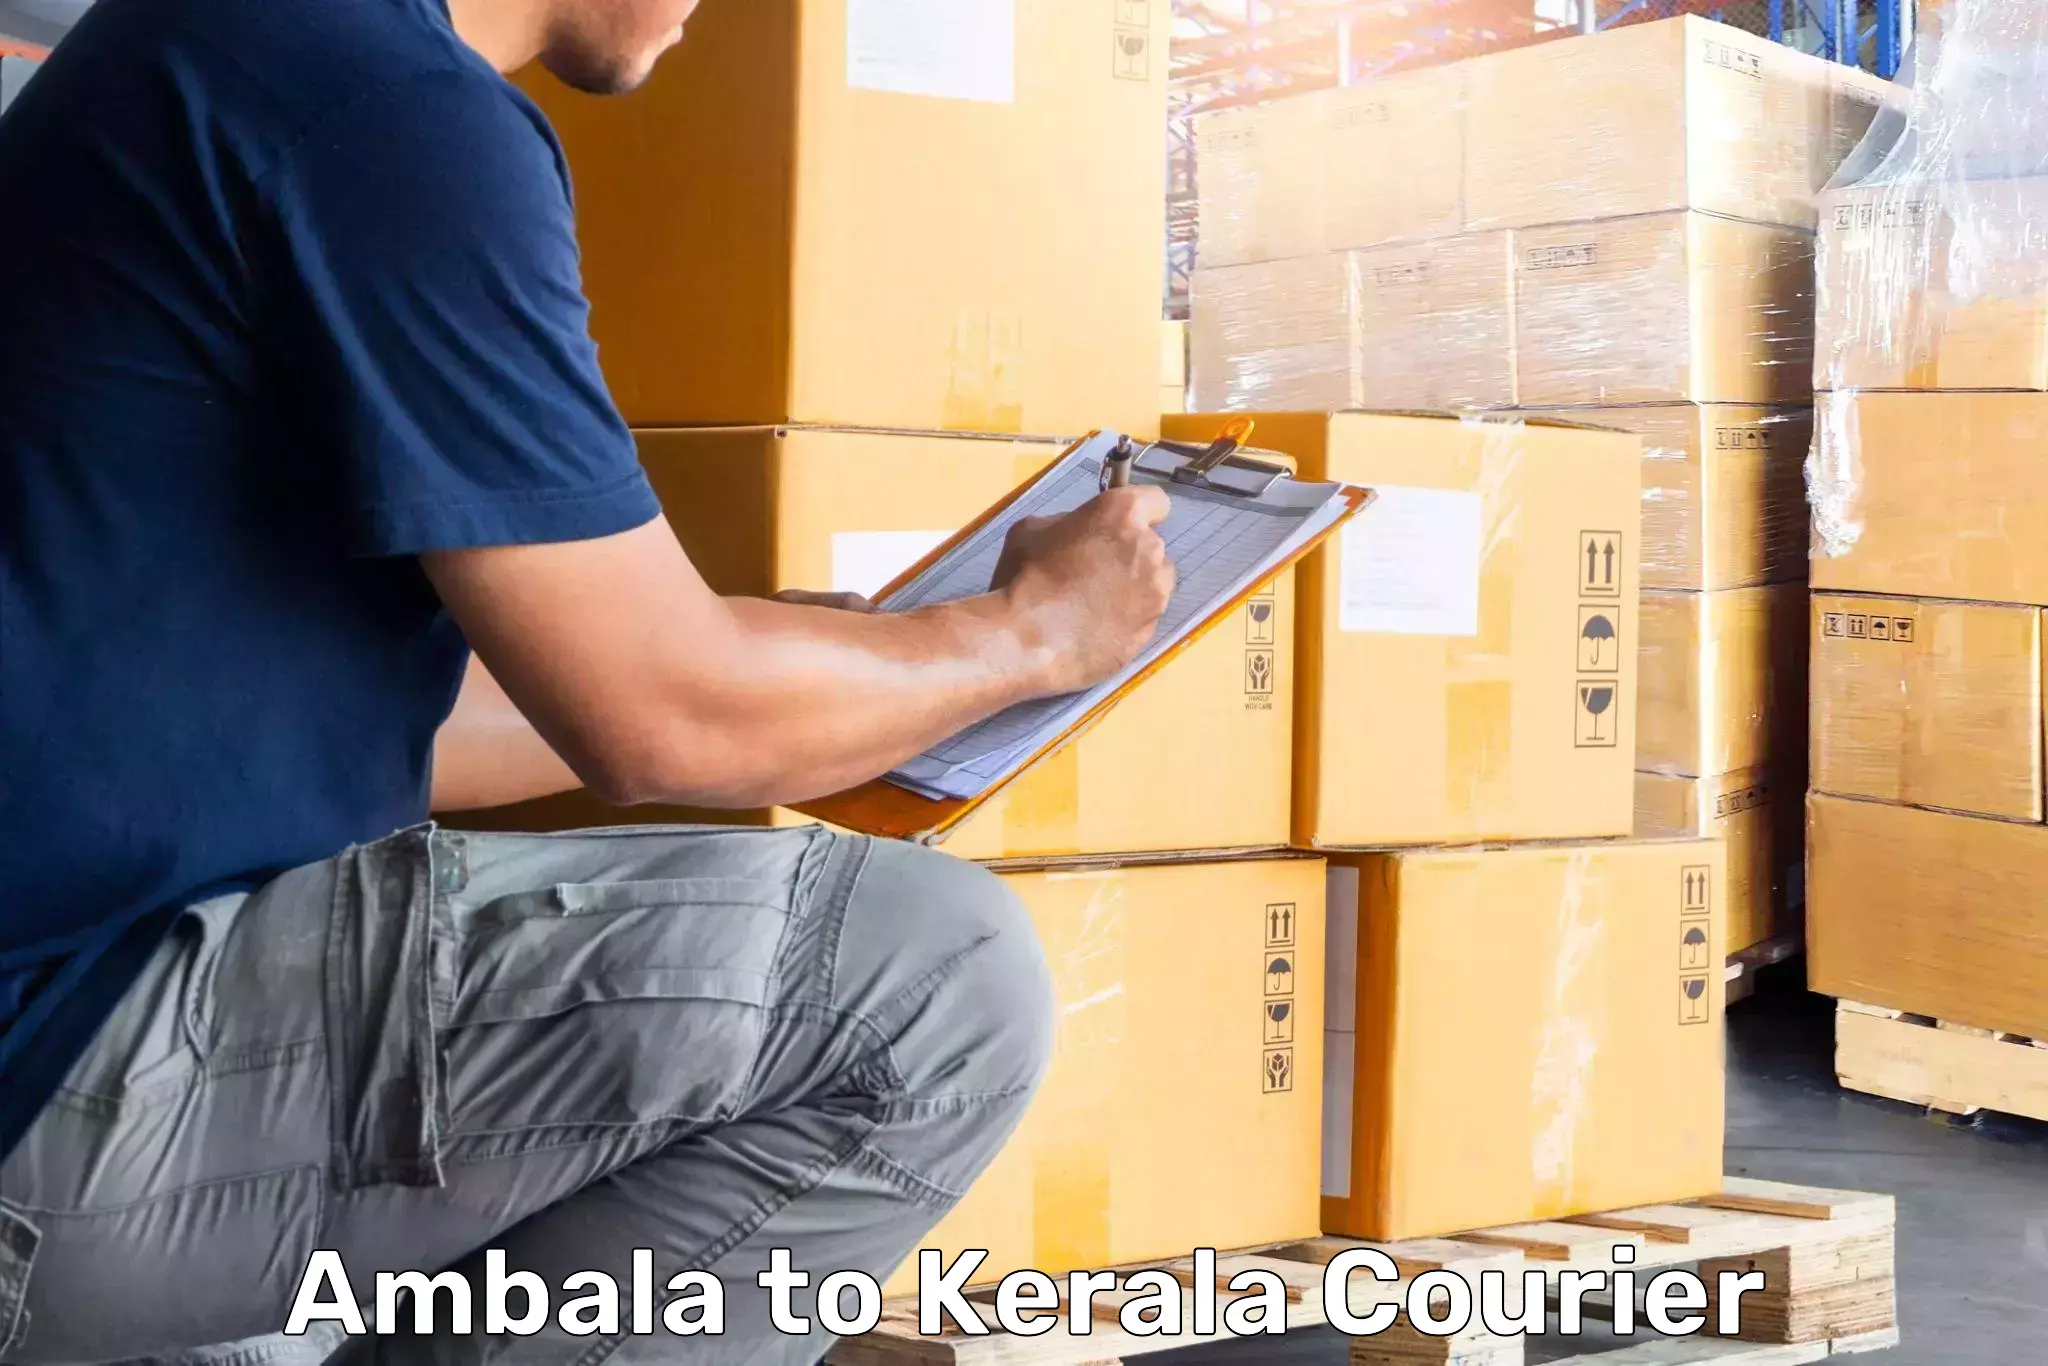 Luggage shipping specialists Ambala to Kattappana